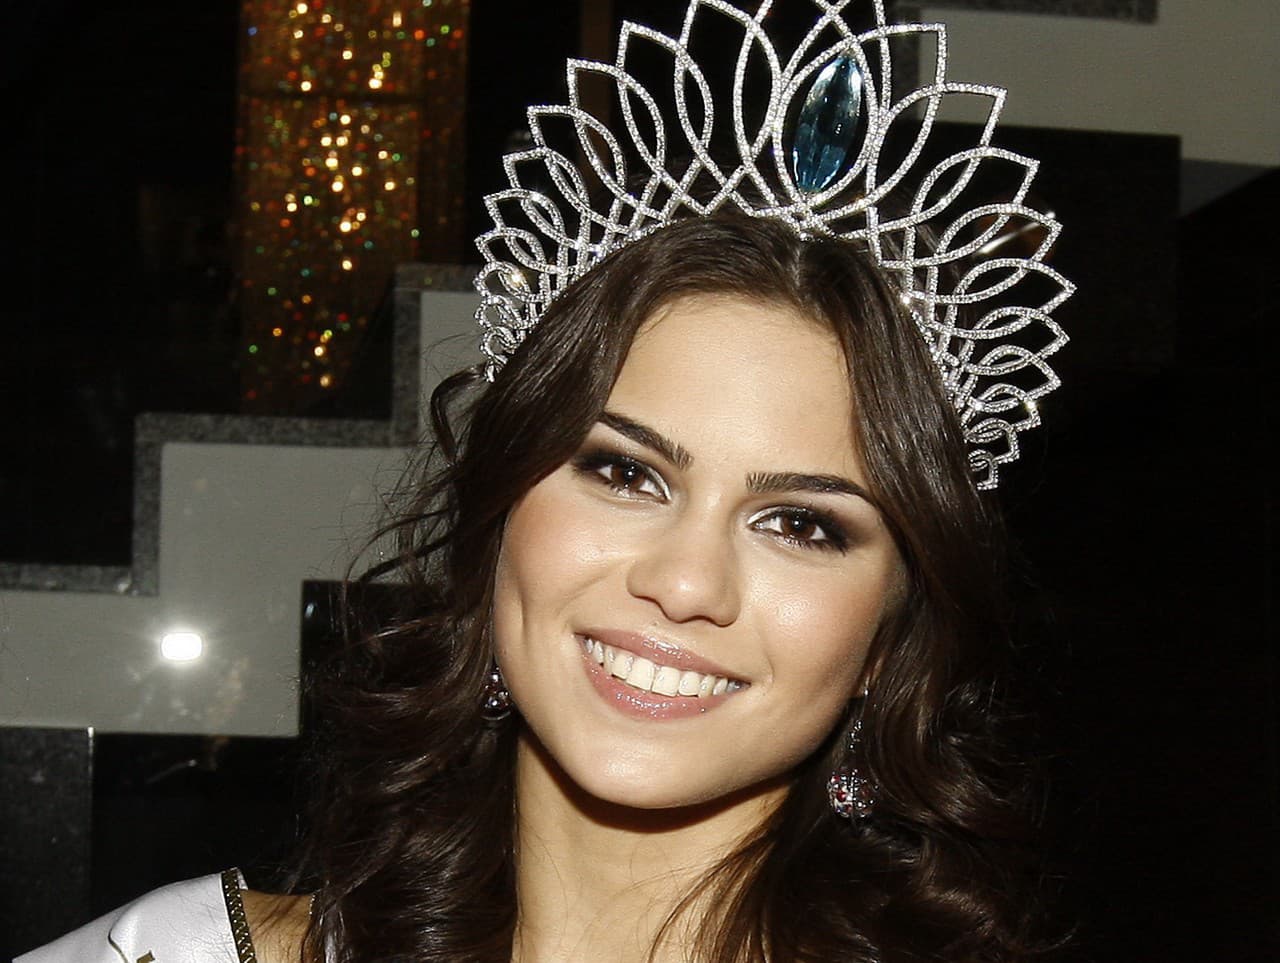 Marína Erceg (v tom čase Georgievová) ako víťazka Miss Slovensko 2010